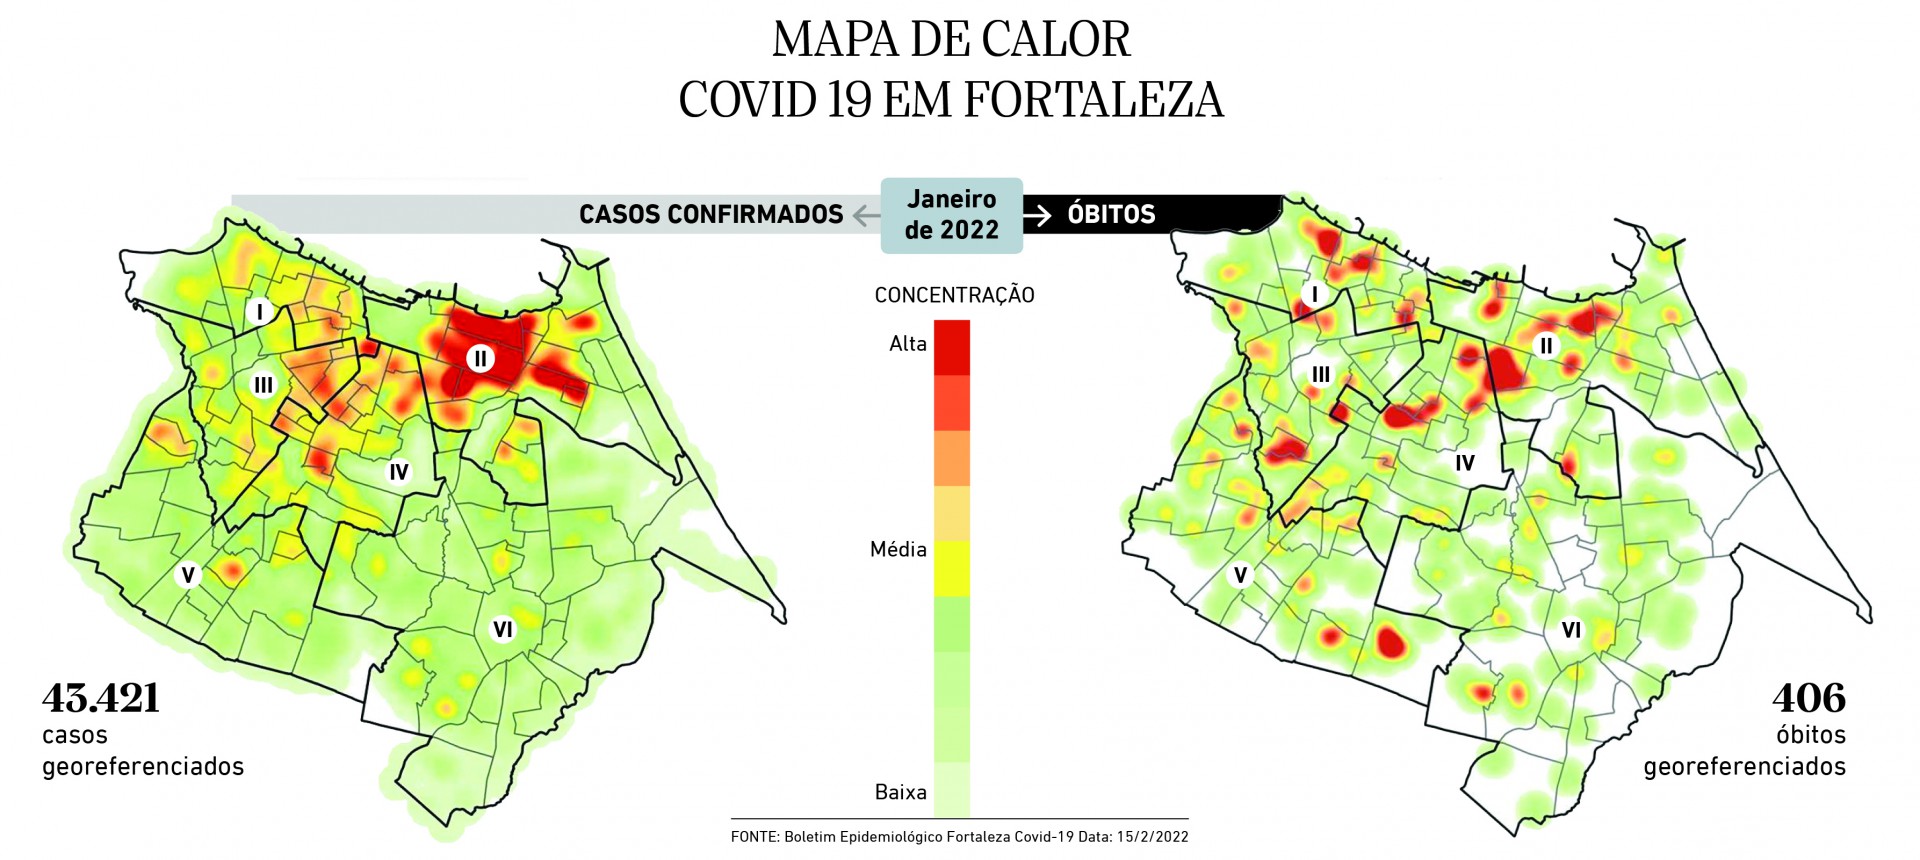 Mapas de calor de casos e óbitos causados por Covid-19 em Fortaleza, a partir de boletim da Secretaria Municipal de Saúde de Fortaleza (SMS) publicado na terça-feira, 15